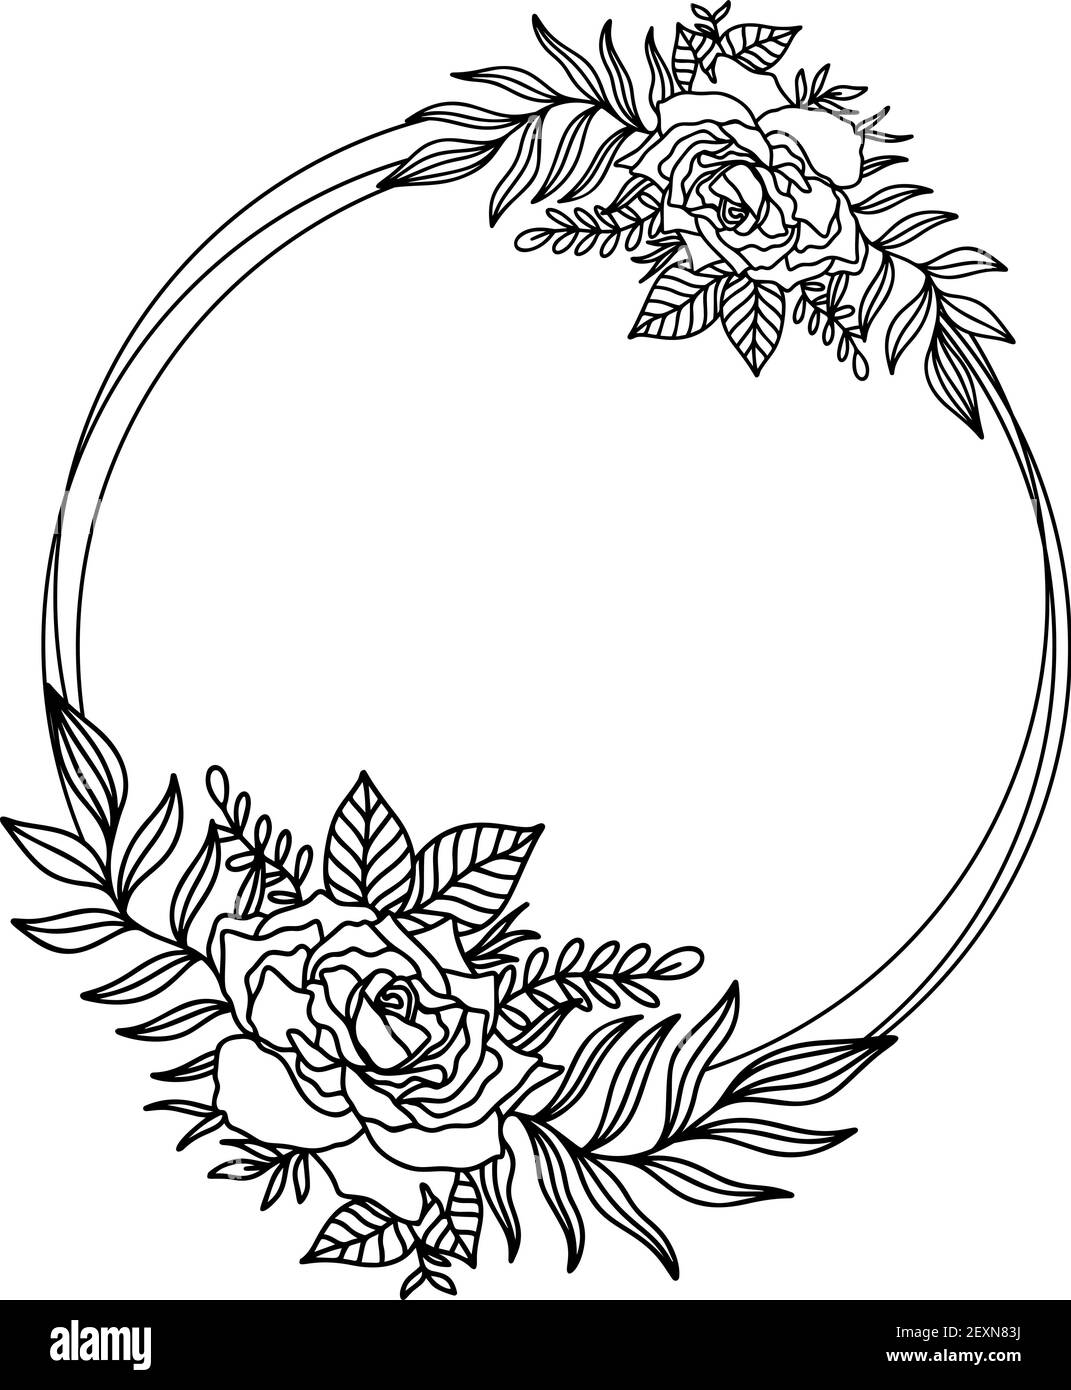 Premium Vector  Hand drawn flower round frame vector floral wedding design  in sketch style